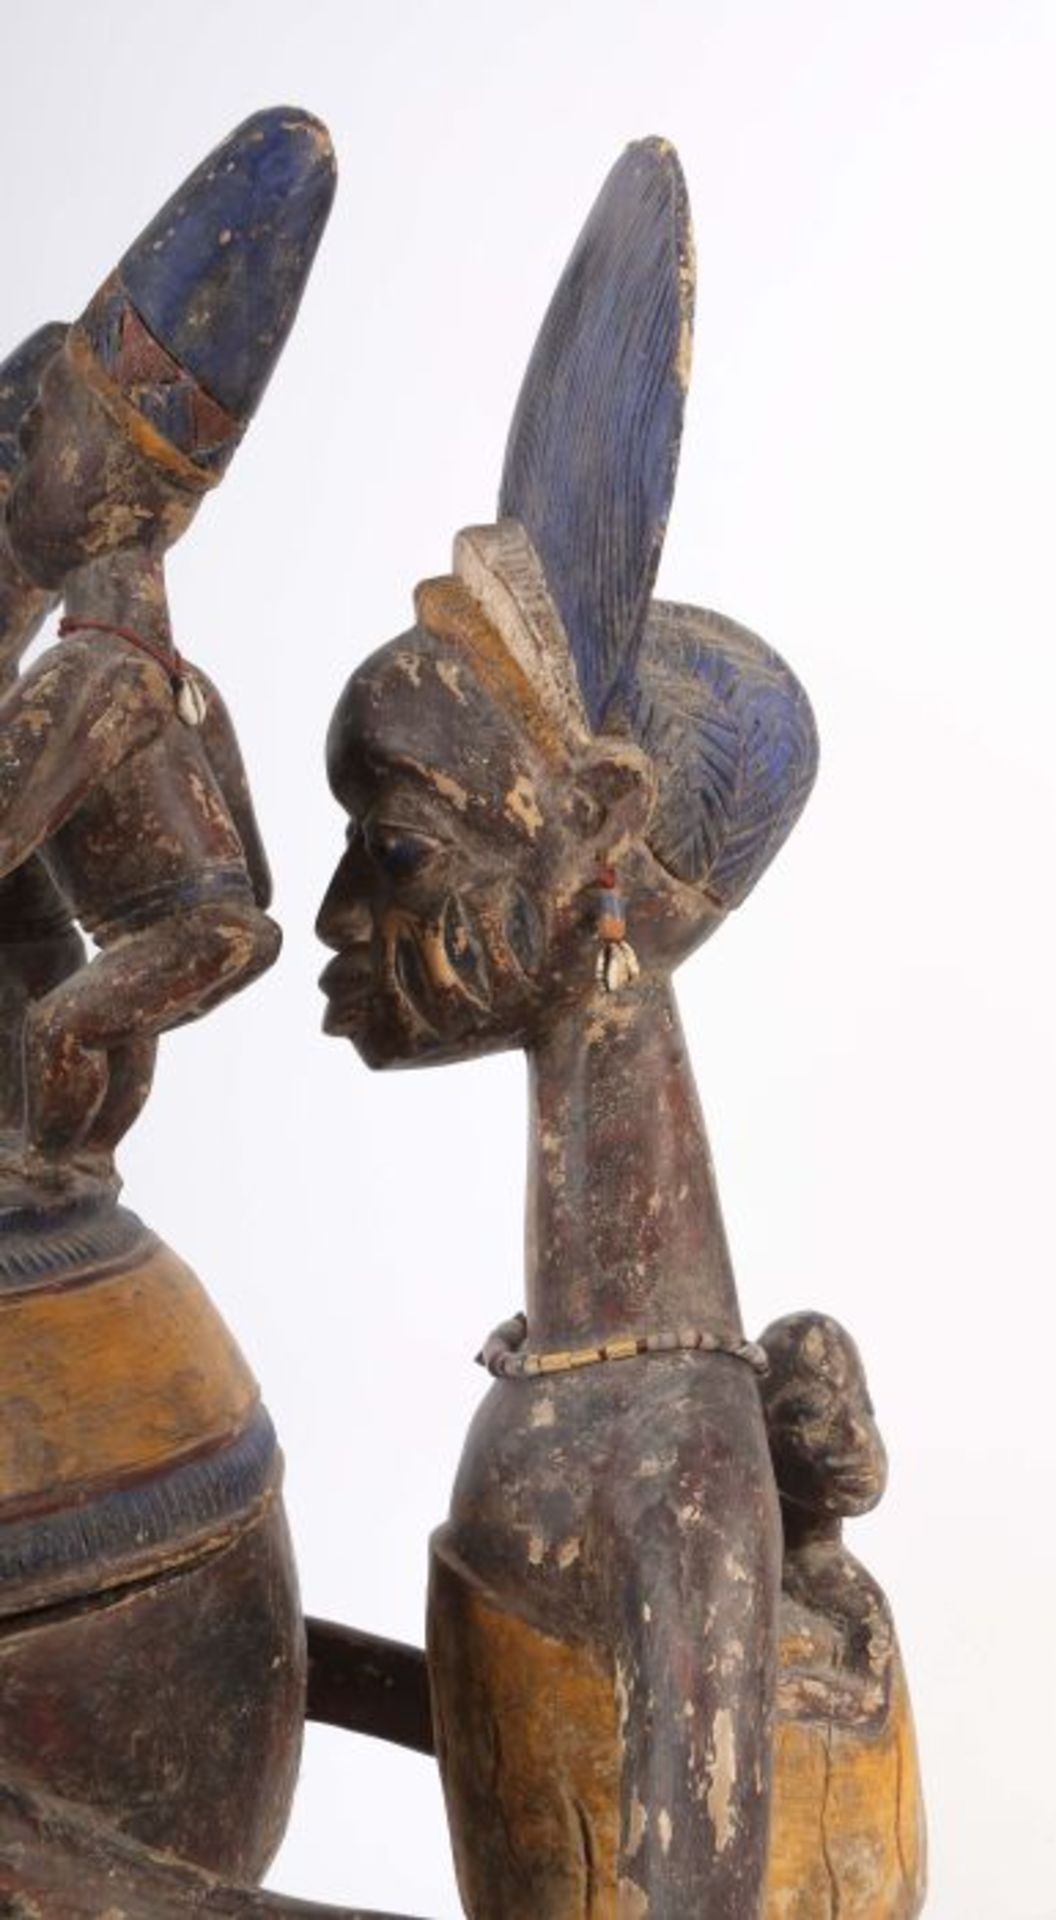 Großes Olumeye-GefäßNigeria, Stamm der Yoruba, 5 Trägerfiguren und 1 große Mutterfigur mit Kind - Image 5 of 10